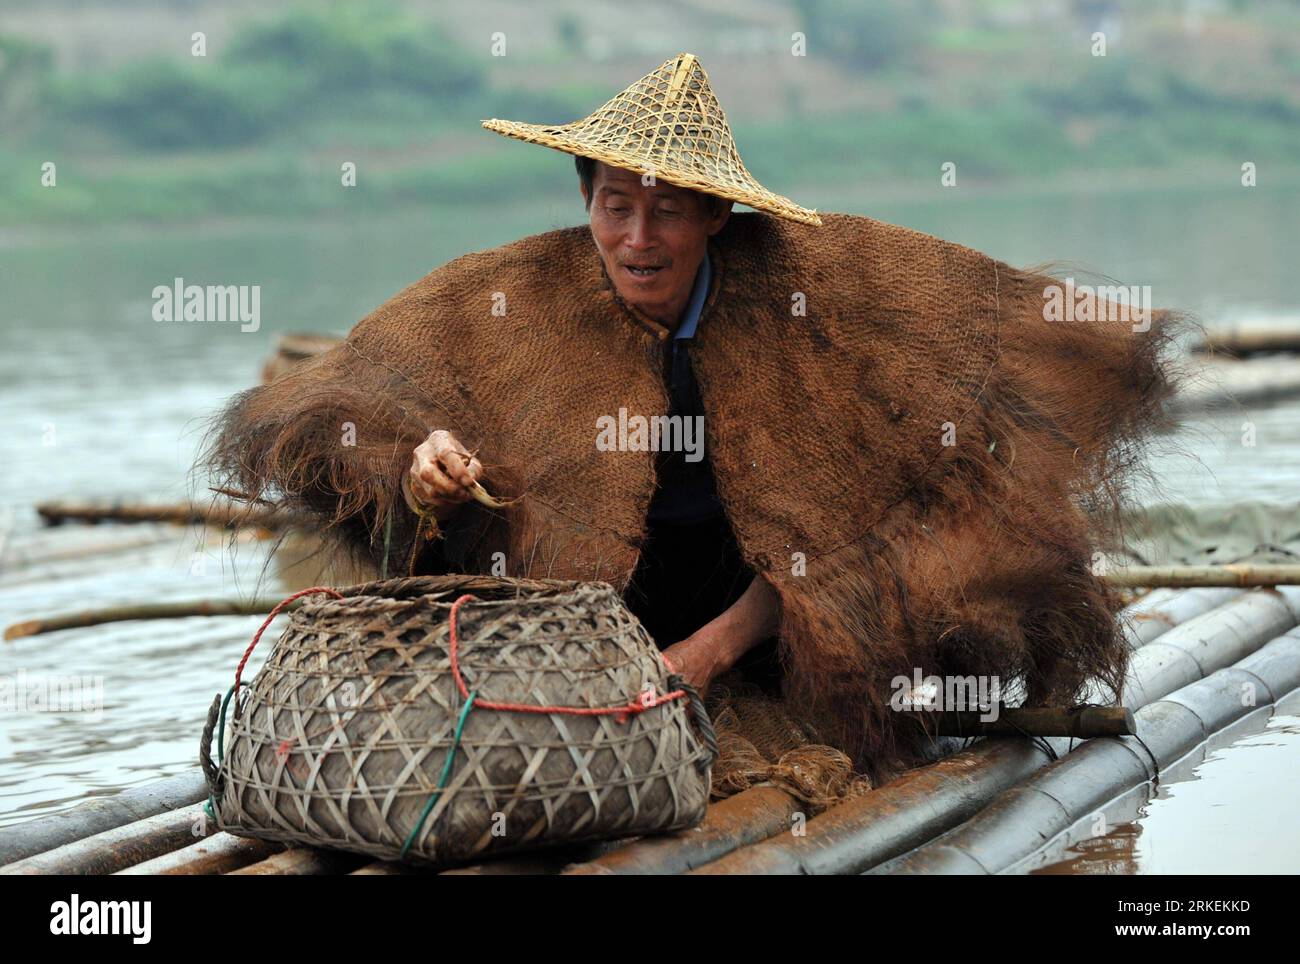 Bildnummer : 55268902 Datum : 16.04.2011 Copyright : imago/Xinhua NINGMING, 17 avril 2011 (Xinhua) -- Un pêcheur récolte des poissons sur la rivière Mingjiang du comté de Ningming, dans le sud-ouest de la Chine, Guangxi Zhuang région autonome, 16 avril 2011. La pisciculture et la capture sont une convention pour les villageois vivant des deux côtés de la rivière Mingjiang. Une activité de pêche traditionnelle au festival culturel international de huashan a attiré de nombreux touristes et photographes de loin et de près récemment. (Xinhua/Zhang Ailin)(zxh) CHINA-GUANGXI-NINGMING-FISHING (CN) PUBLICATIONxNOTxINxCHN Gesellschaft Arbeitswelten Banque D'Images